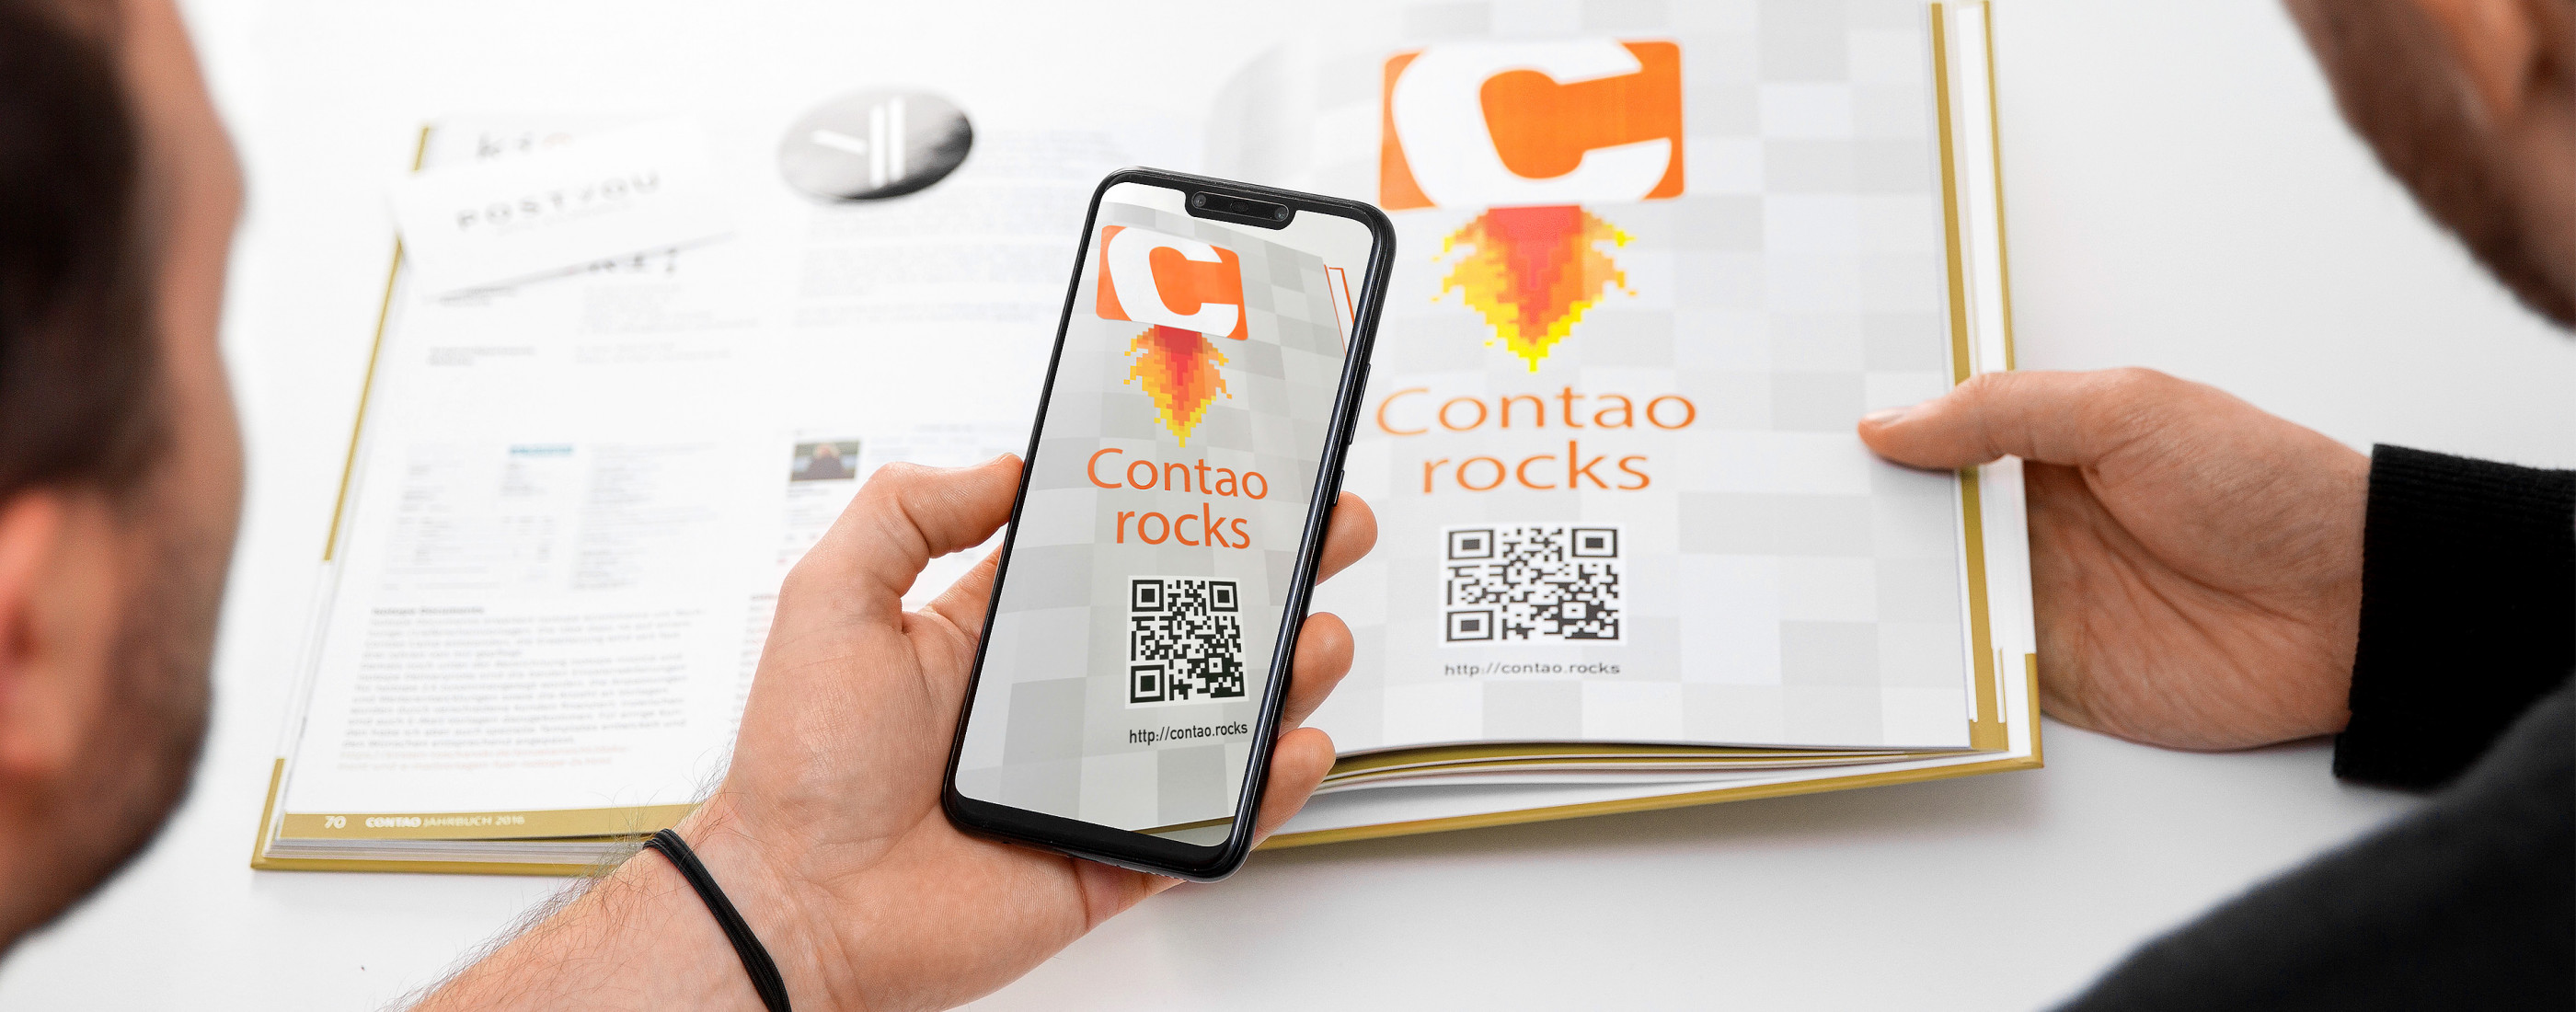 Aus dem Contao-Jahrbuch wird mit einem Smartphone von der Seite "Contao-Rocks" der QR-Code abgescannt